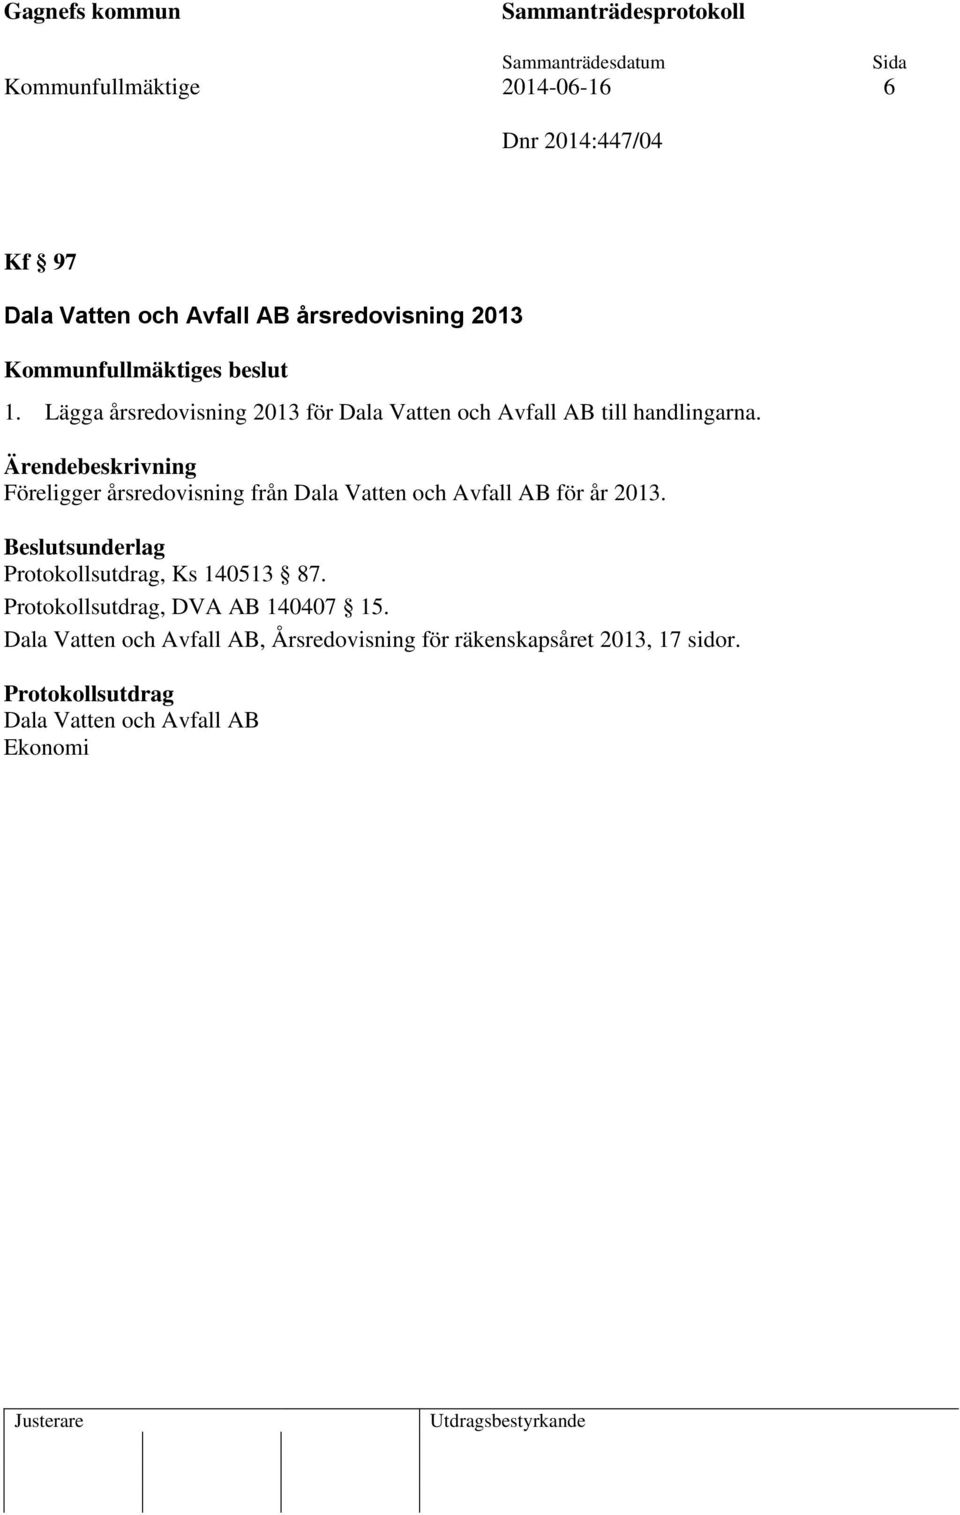 Föreligger årsredovisning från Dala Vatten och Avfall AB för år 2013., Ks 140513 87.